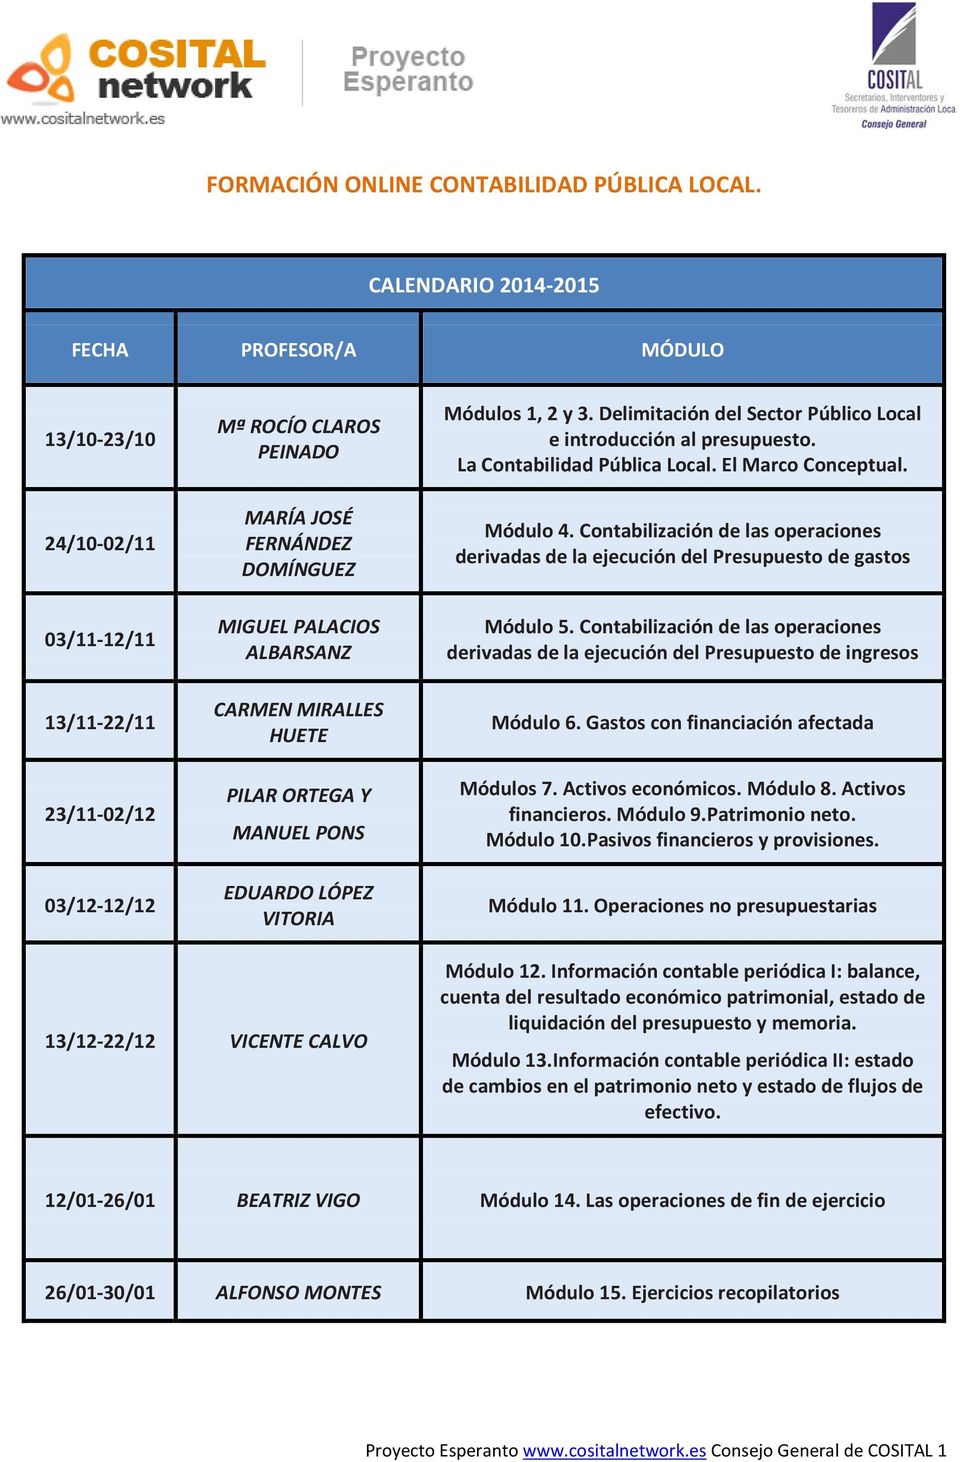 Contabilización de las operaciones derivadas de la ejecución del Presupuesto de gastos 03/11-12/11 13/11-22/11 23/11-02/12 03/12-12/12 MIGUEL PALACIOS ALBARSANZ CARMEN MIRALLES HUETE PILAR ORTEGA Y